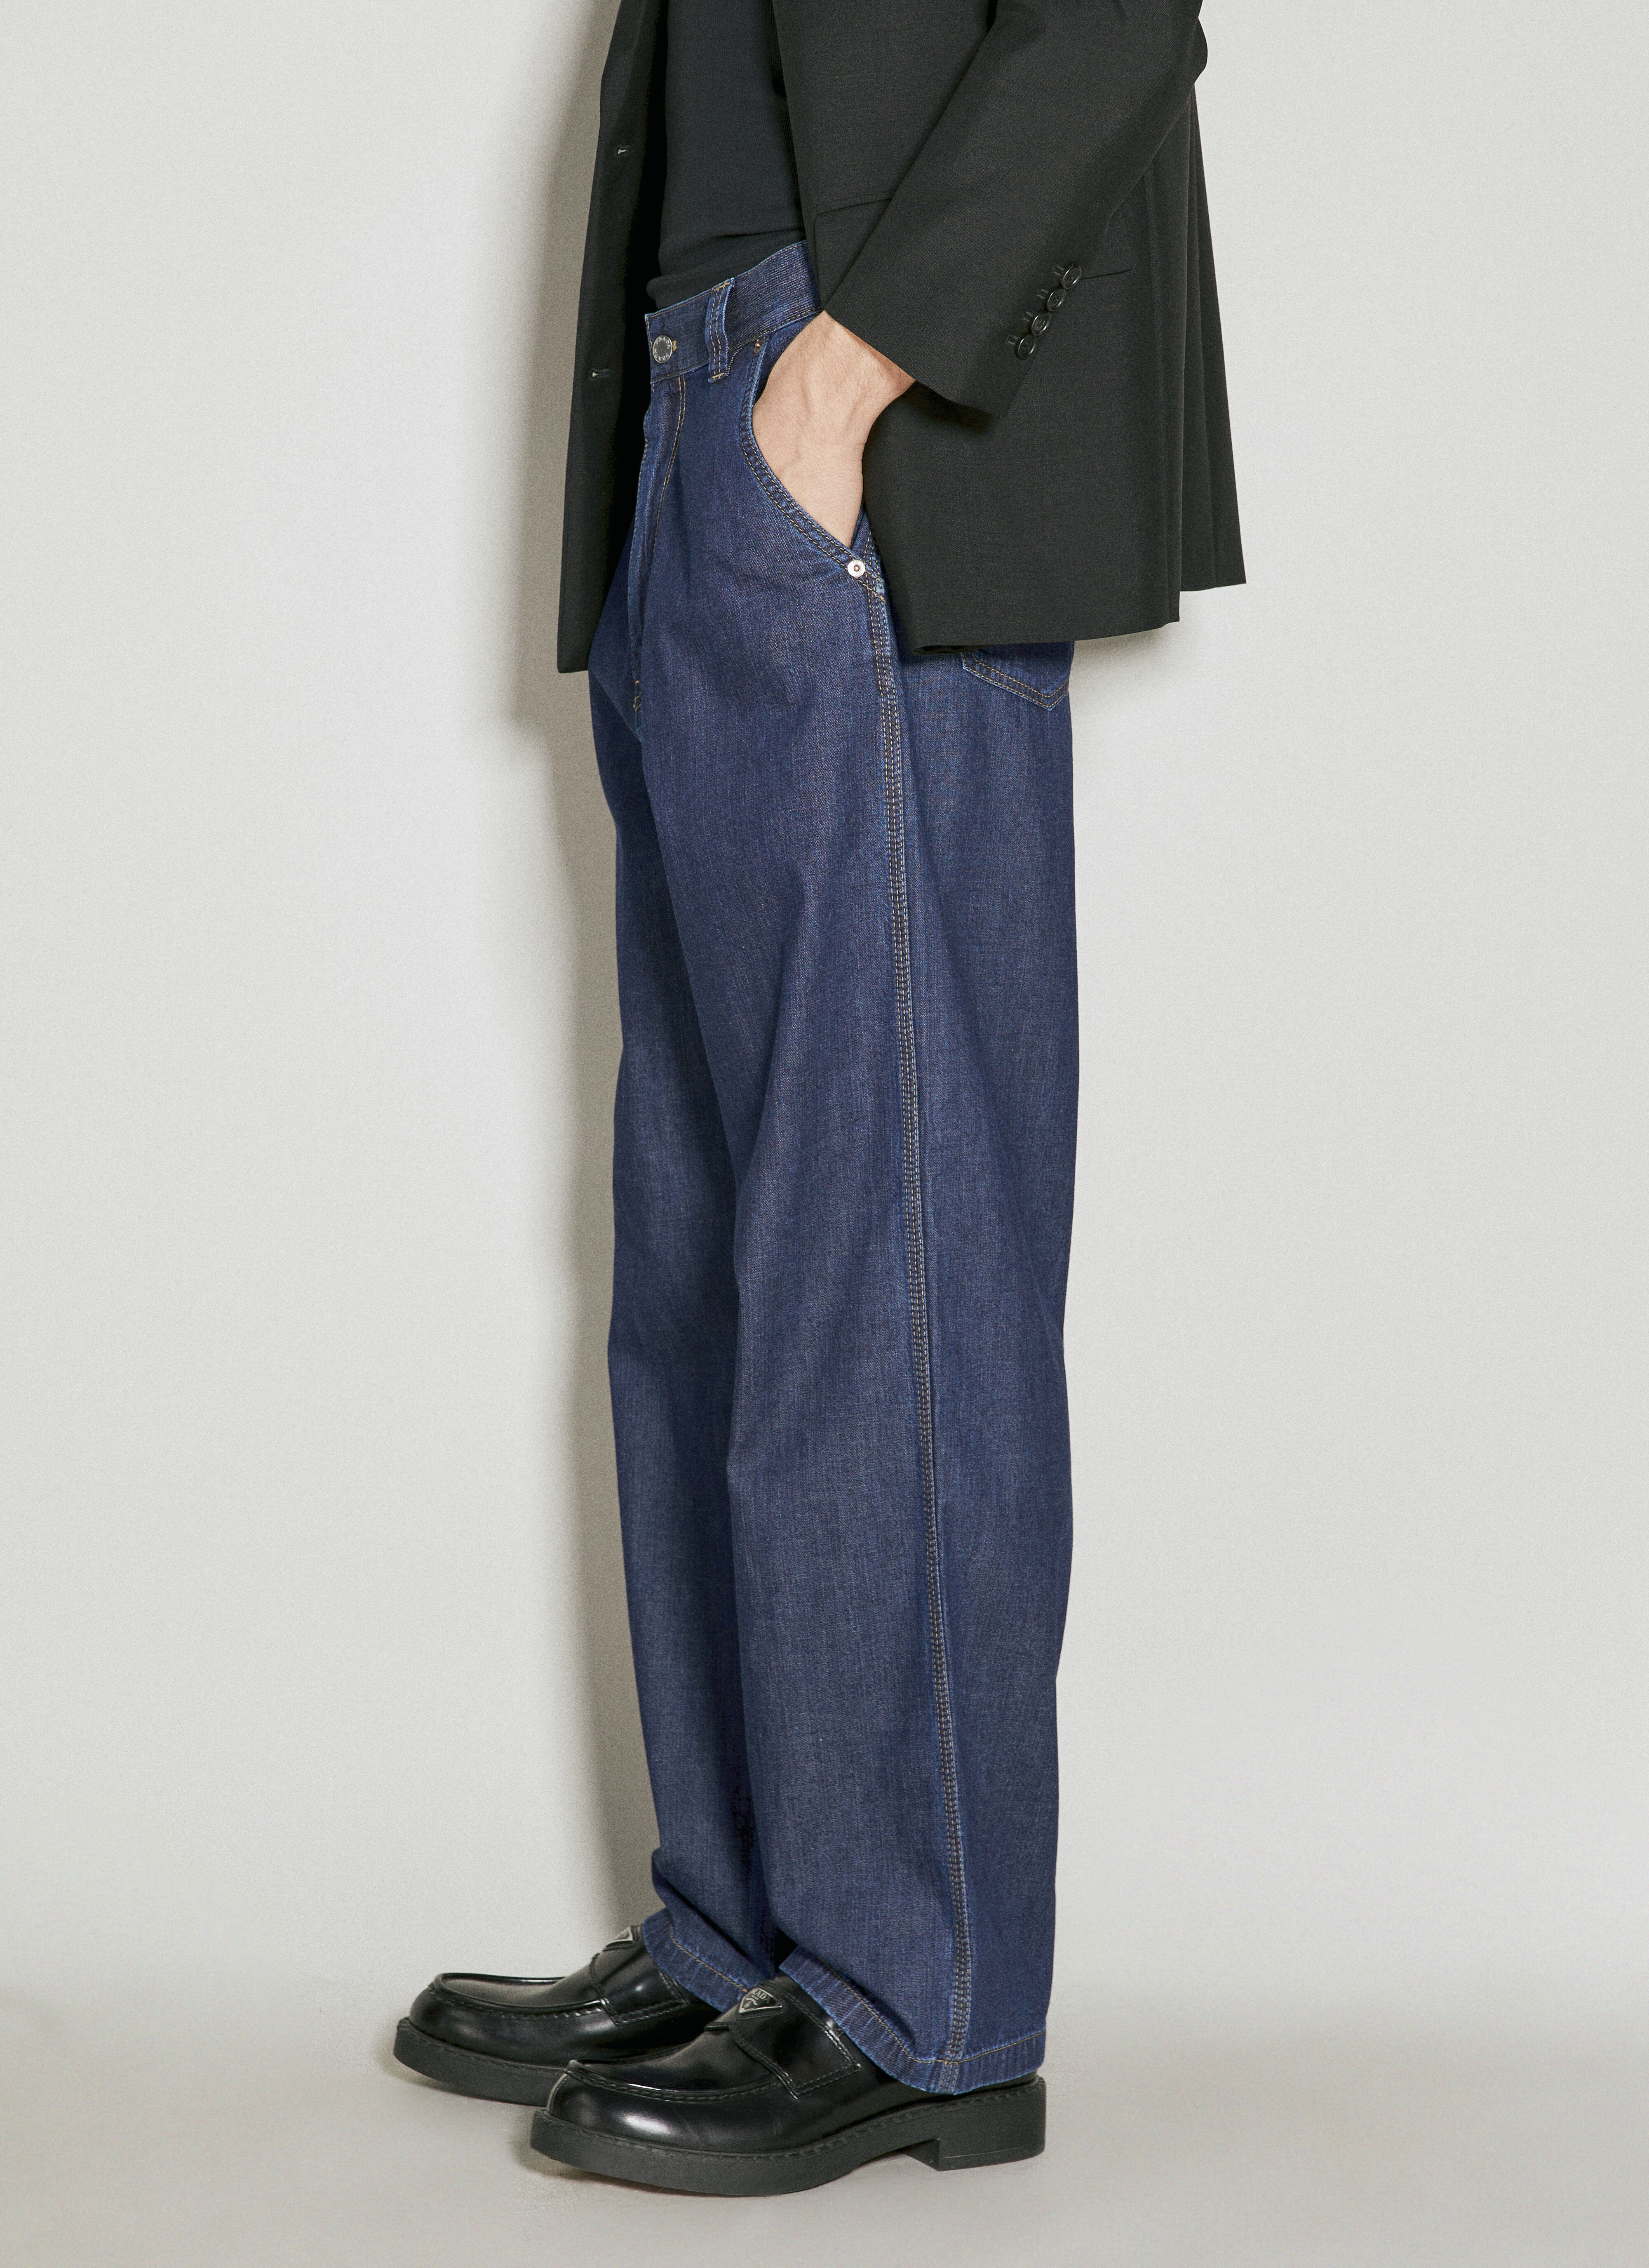 Vivienne Westwood Lightweight Jeans Black vvw0155001